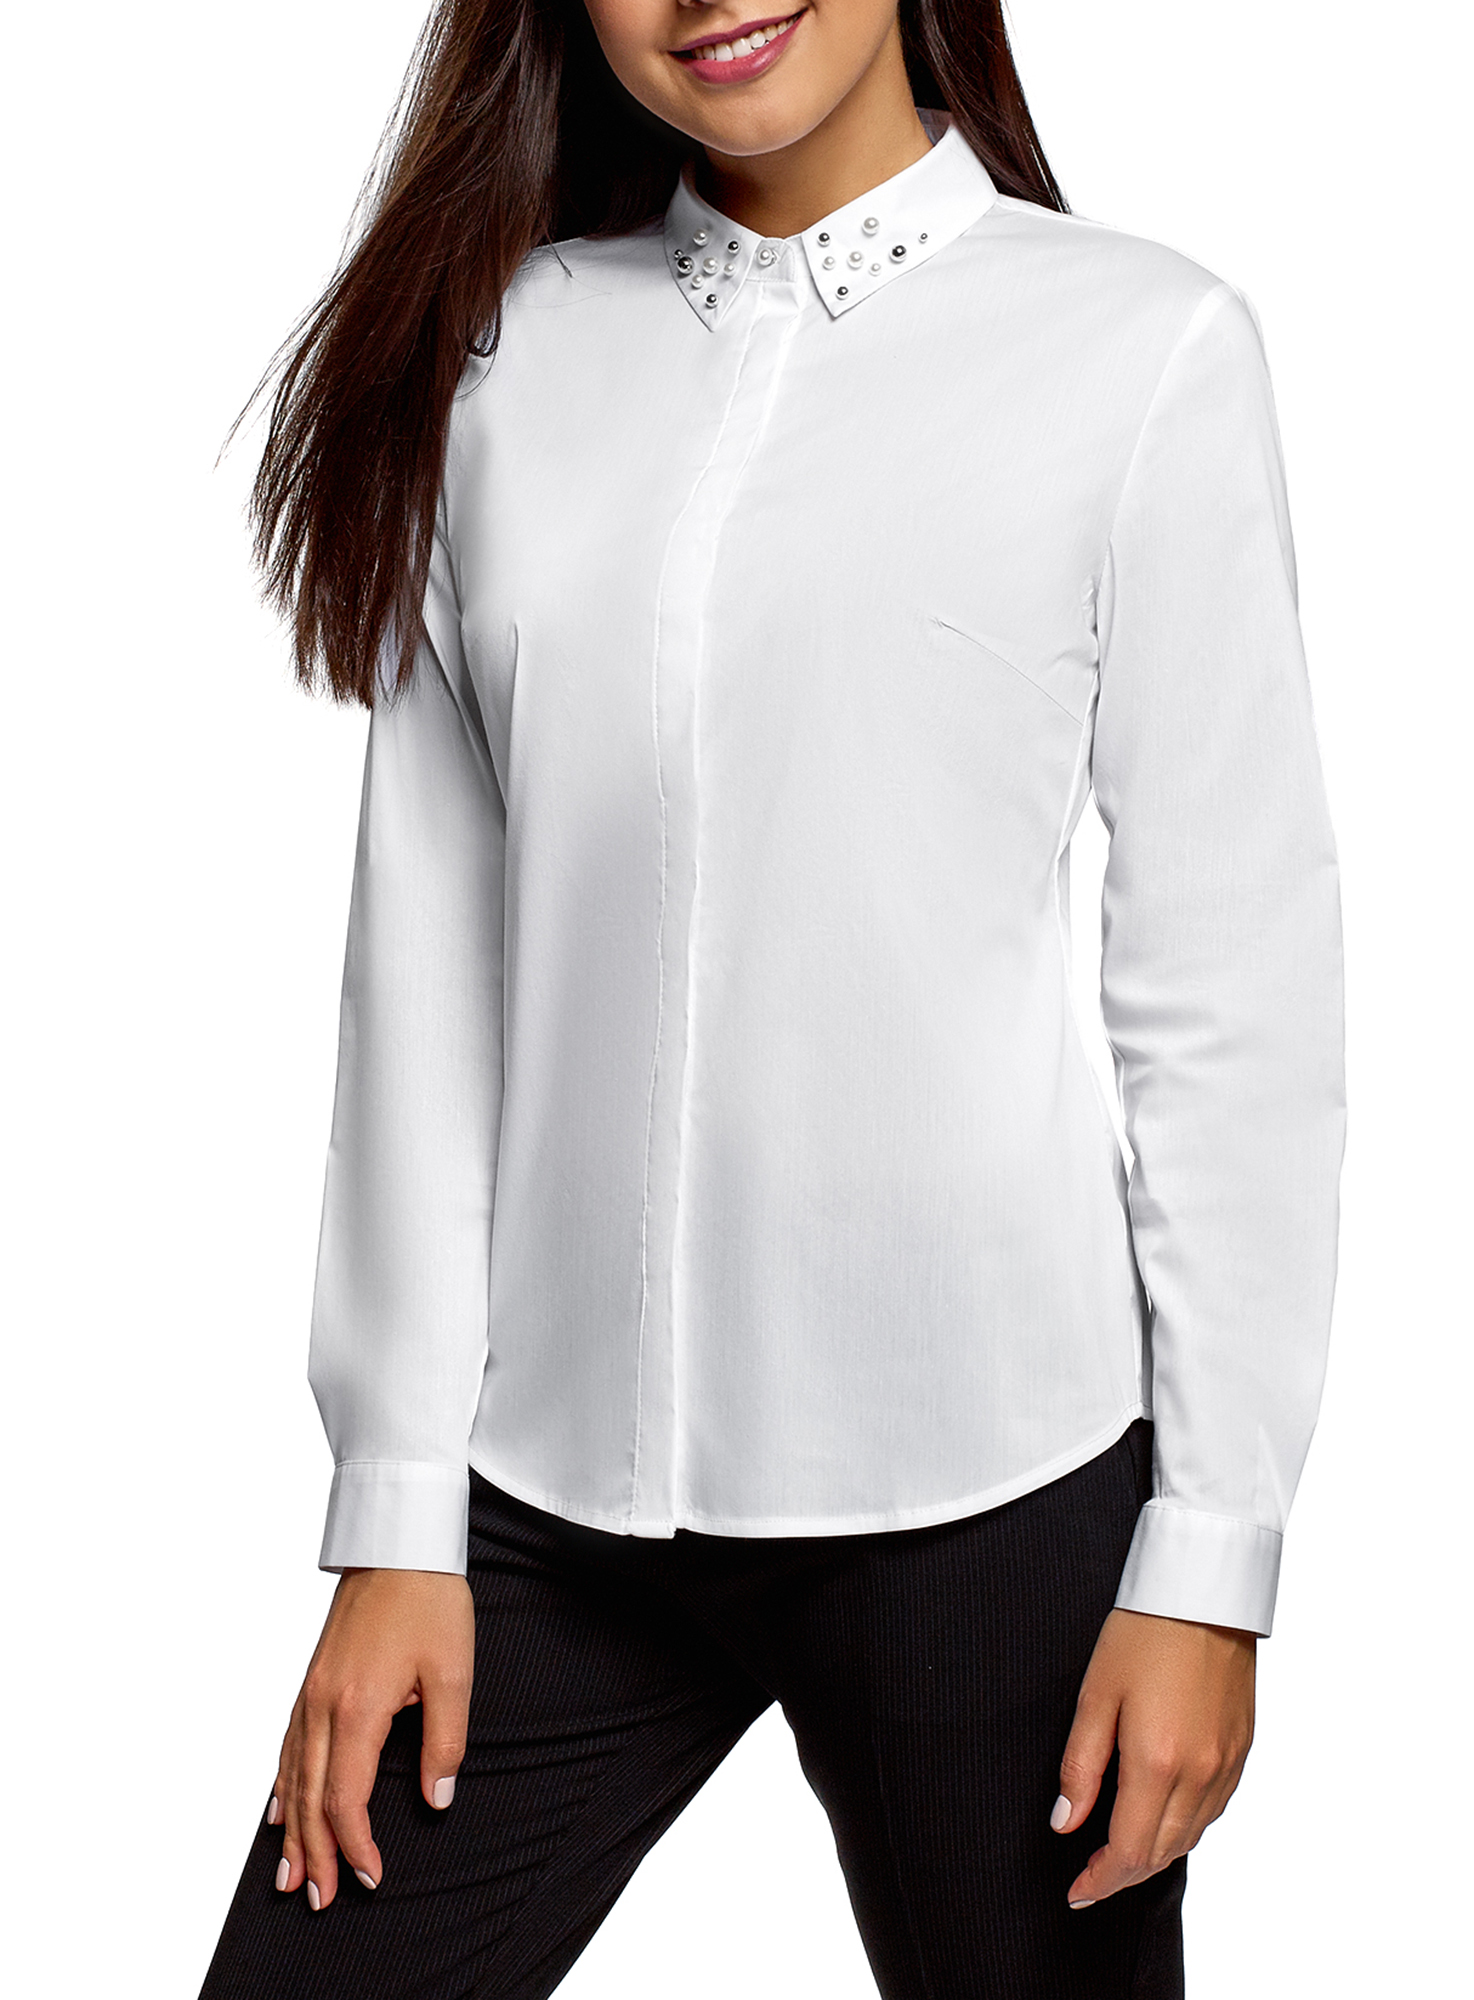 Заказать блузку. Белая блузка. Рубашка женская. Блузка с длинным рукавом. Белая блузка женская.